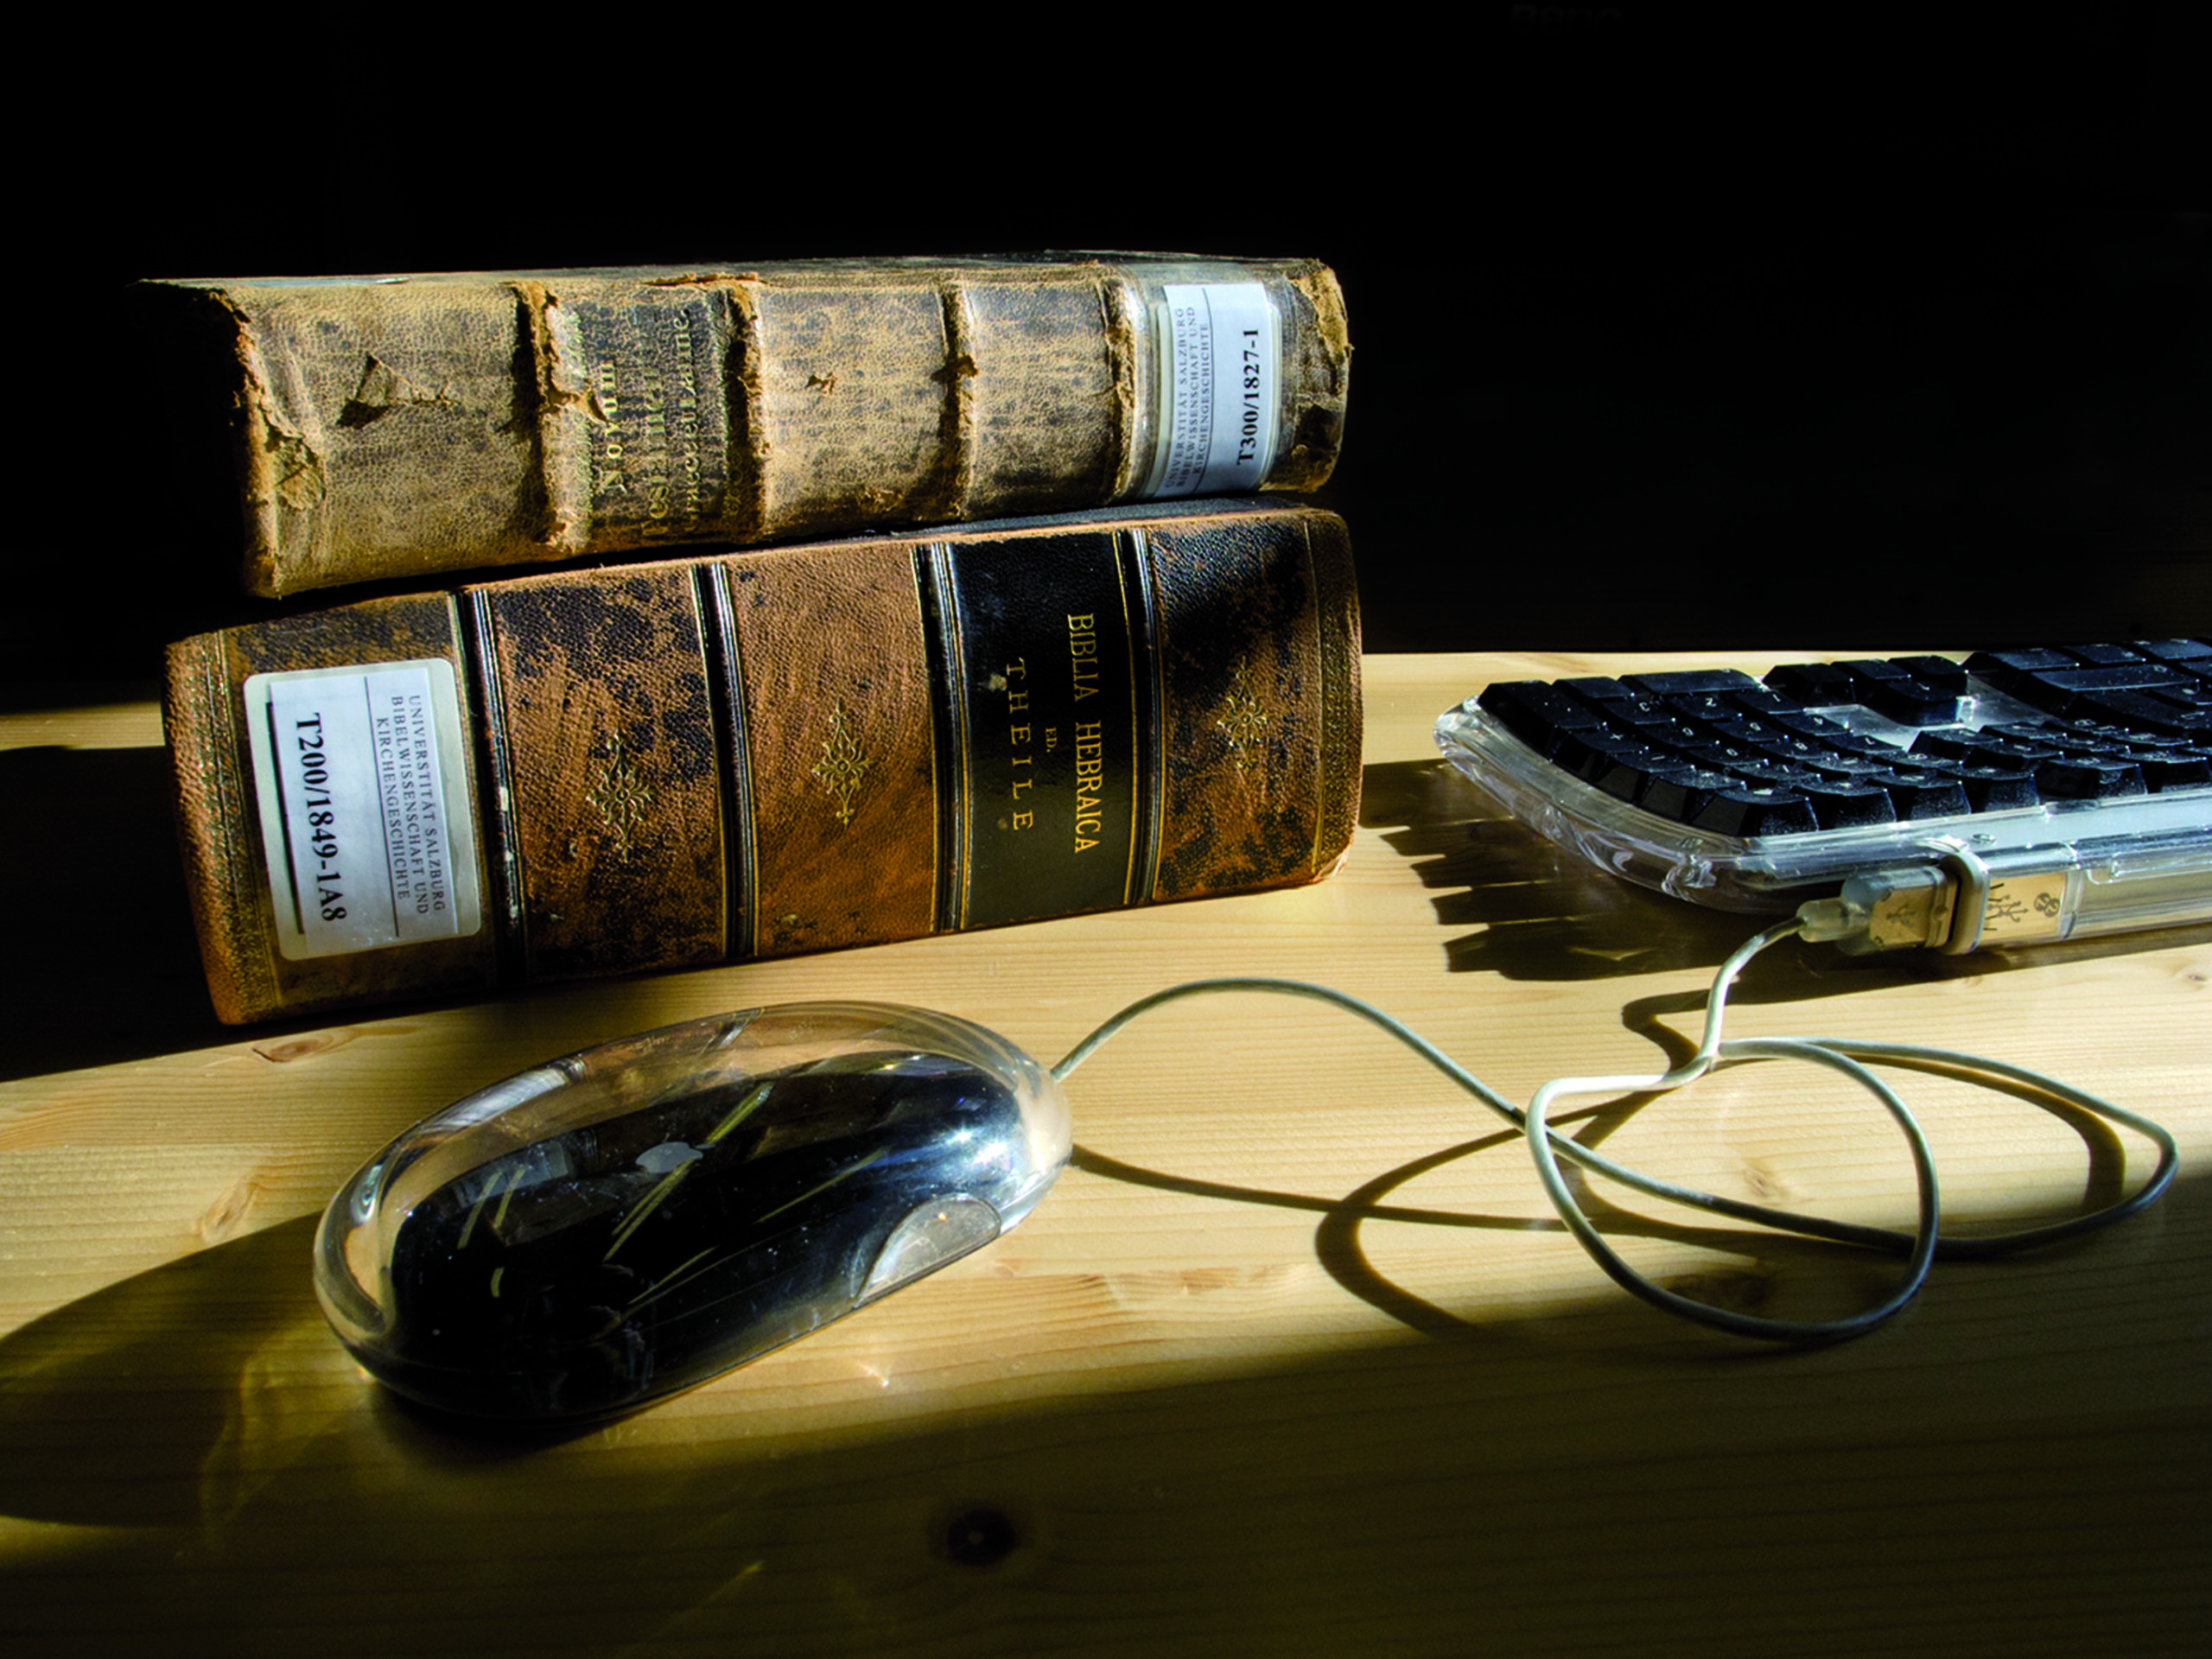 Foto: keyboard and old books; © Caputo